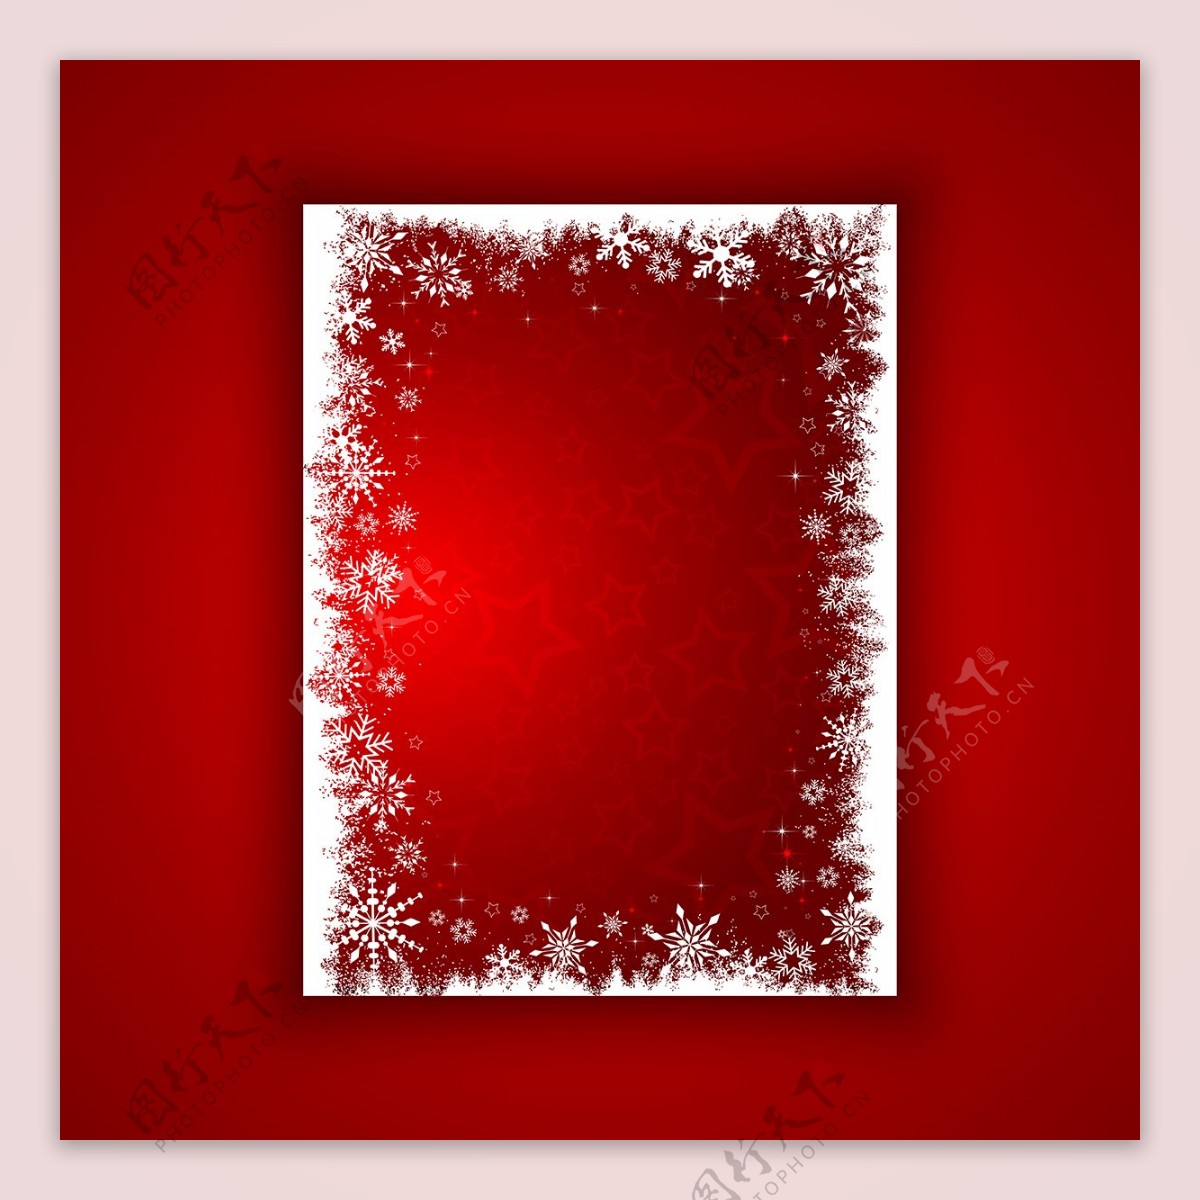 红色背景与白色的框架圣诞